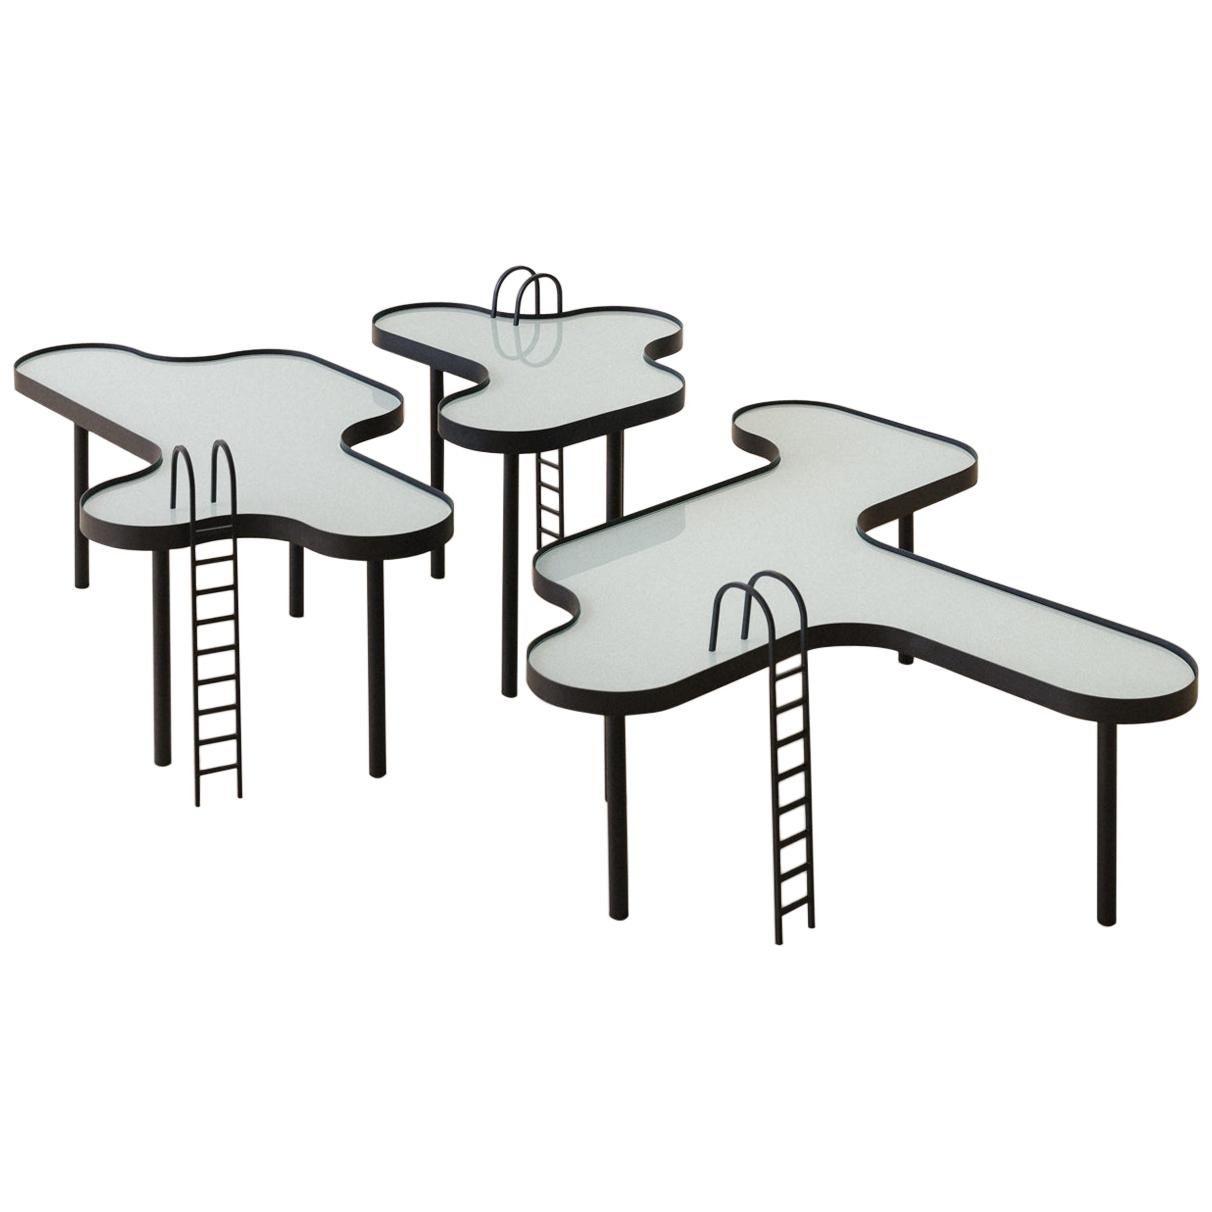 Small "Swimming Pool" Table by RAIN, Brazilian Contemporary Design